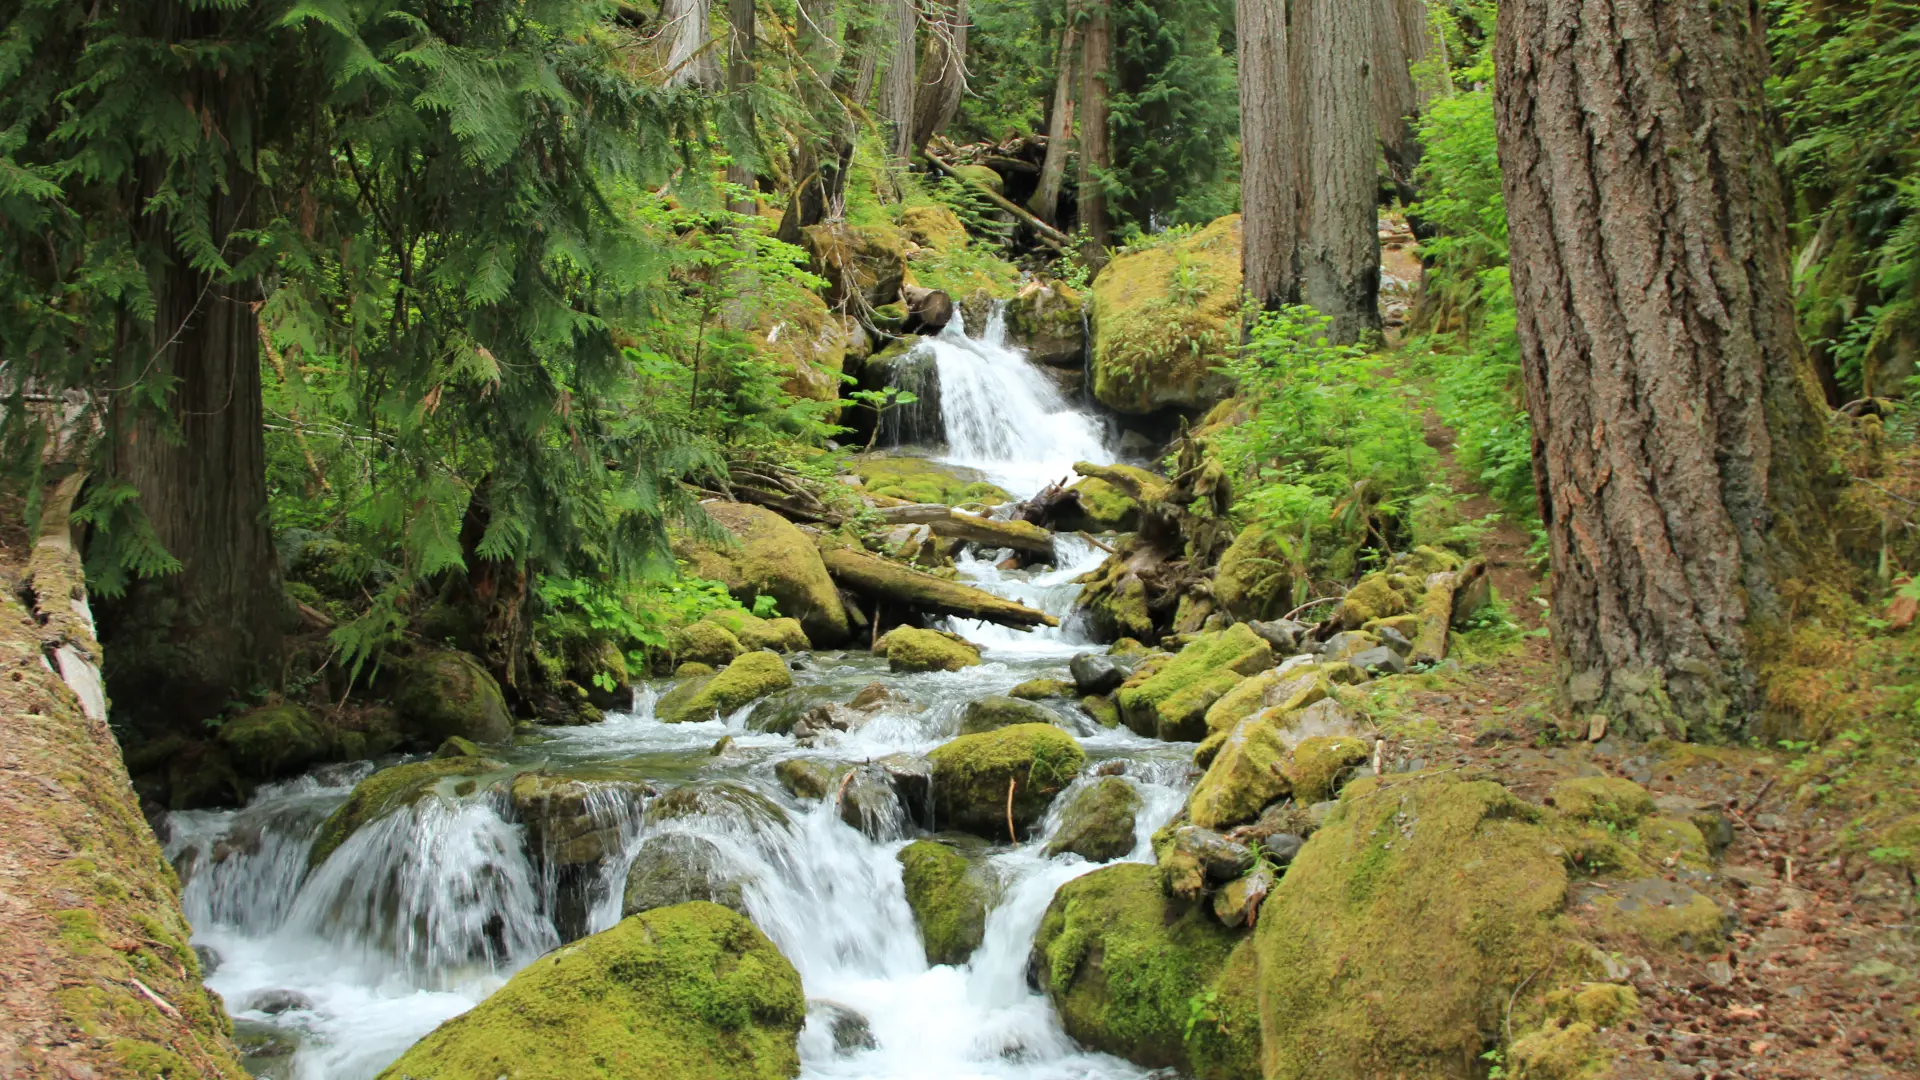 Strathcona - En af de ældste og smukkeste nationalparker på Vancouver Island. Nåes nemt i bil fra Campbell River og byder på mange fine vandreruter, Check Point Travel